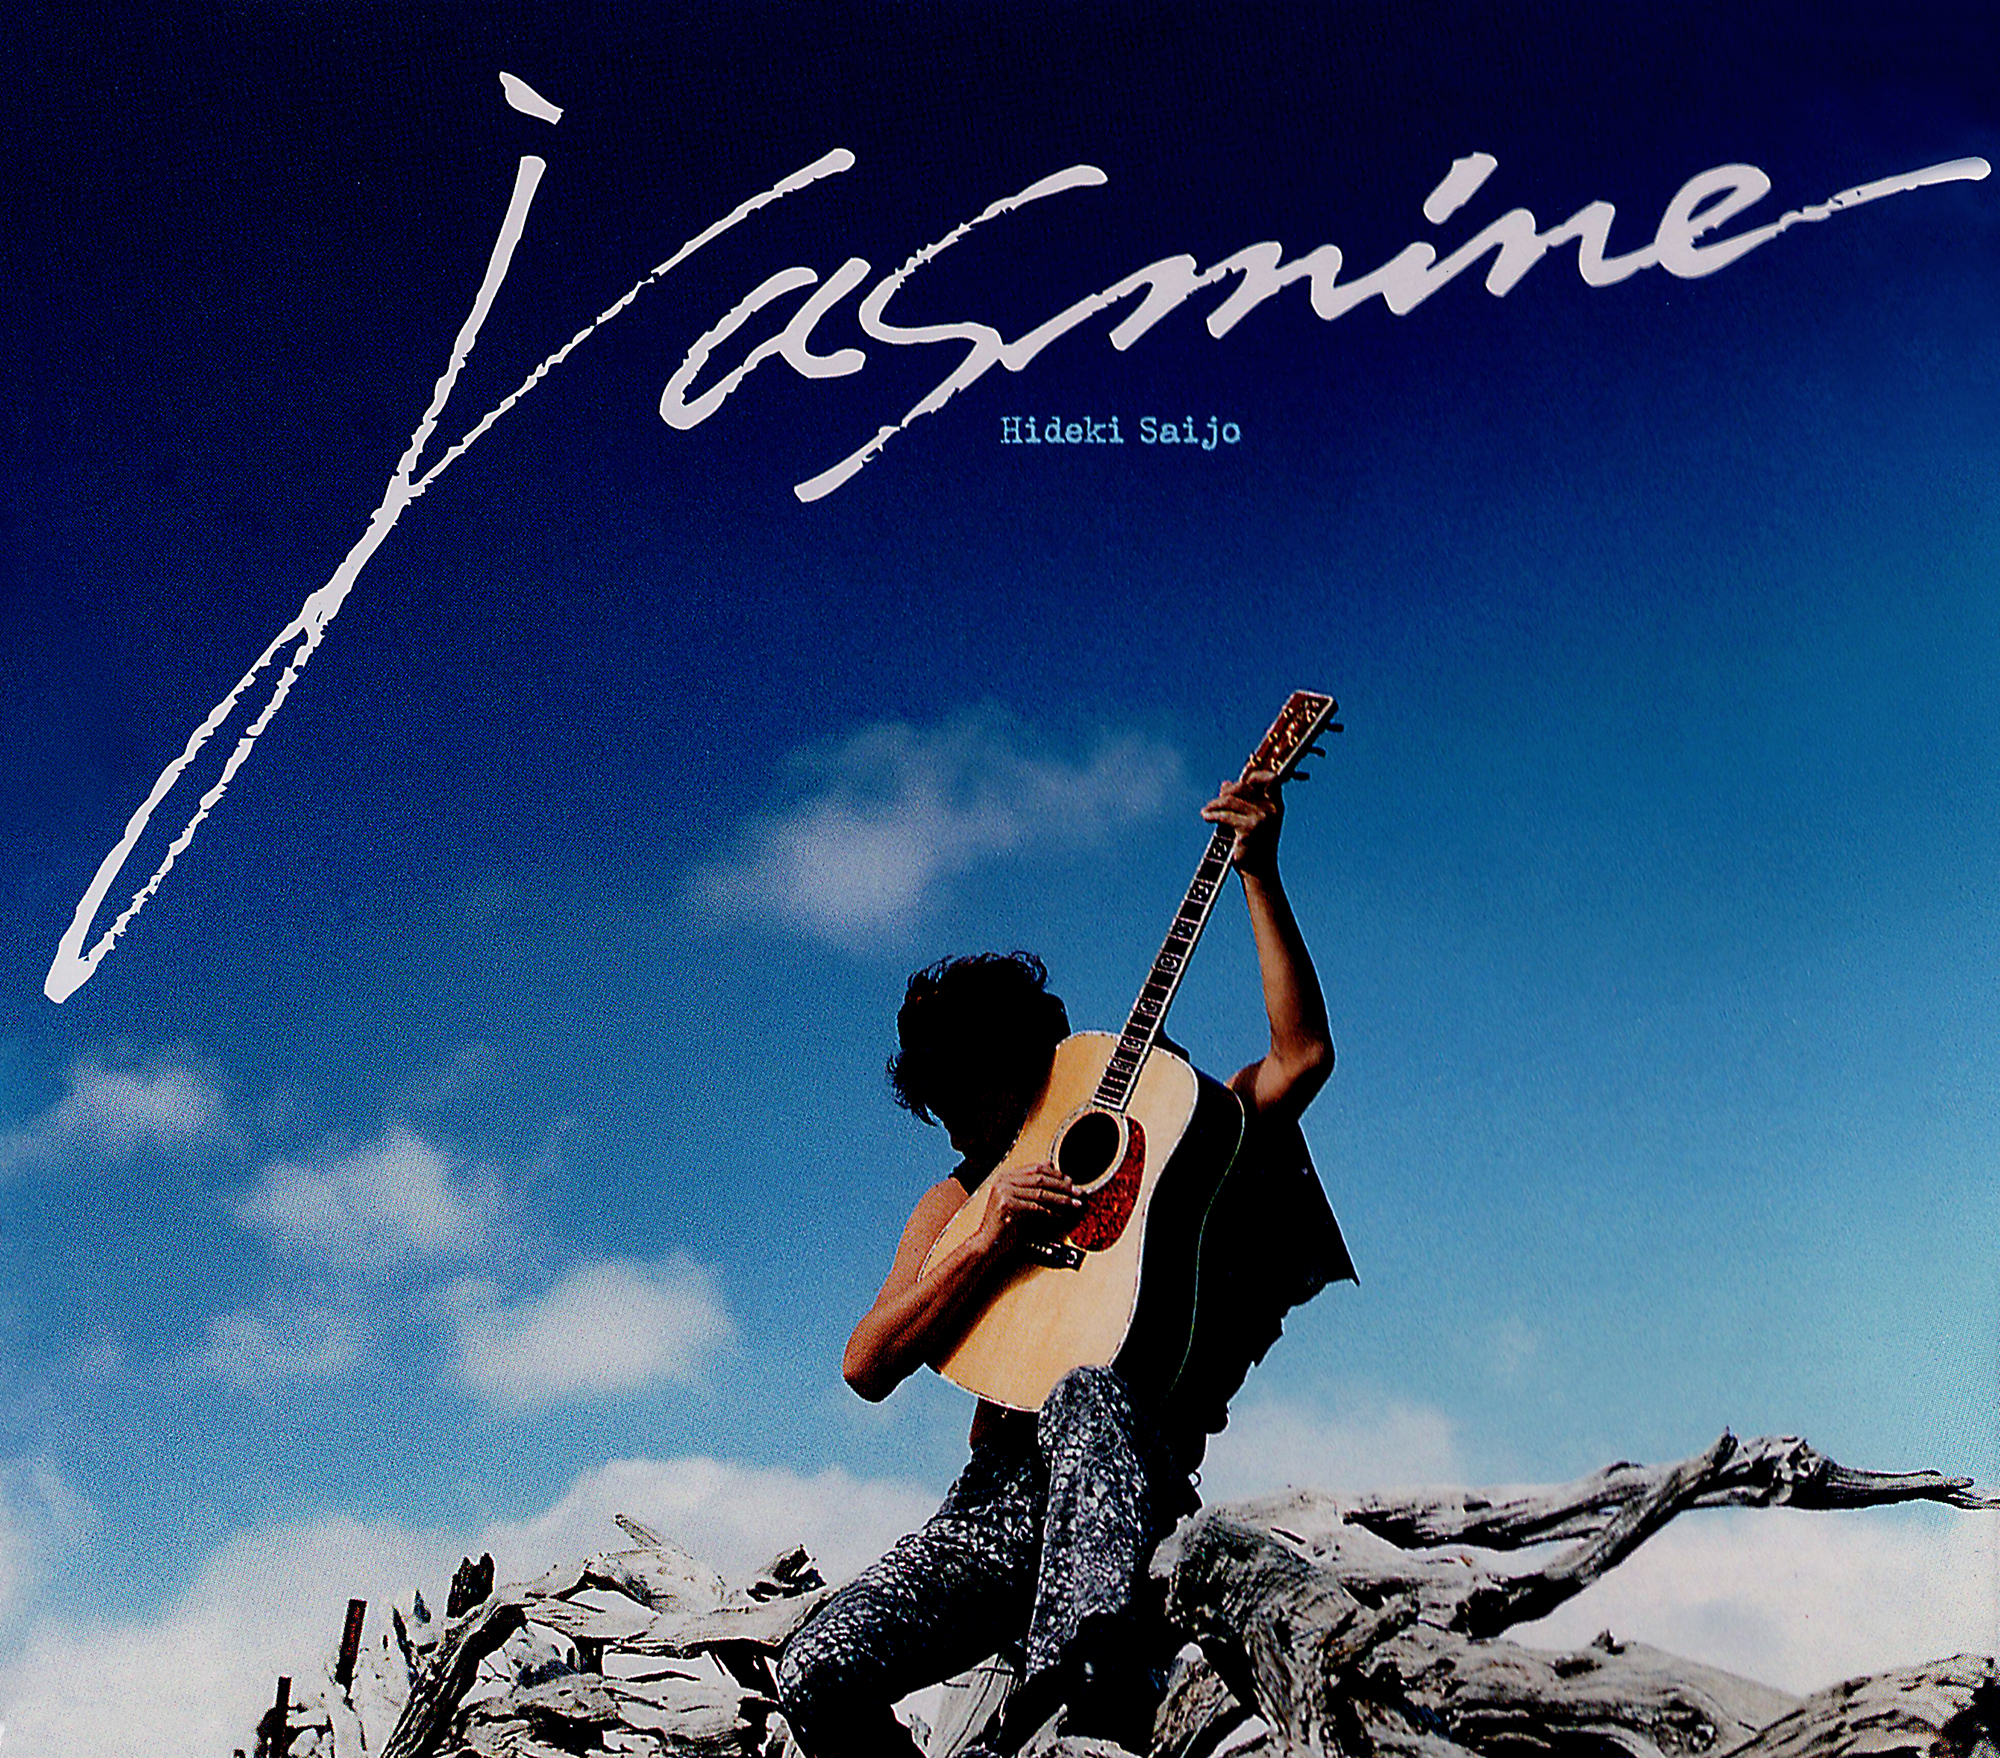 西城秀樹 83rdシングル デビュー30周年記念シングル『Jasmine』(2001年5月23日発売) 高画質CDジャケット画像